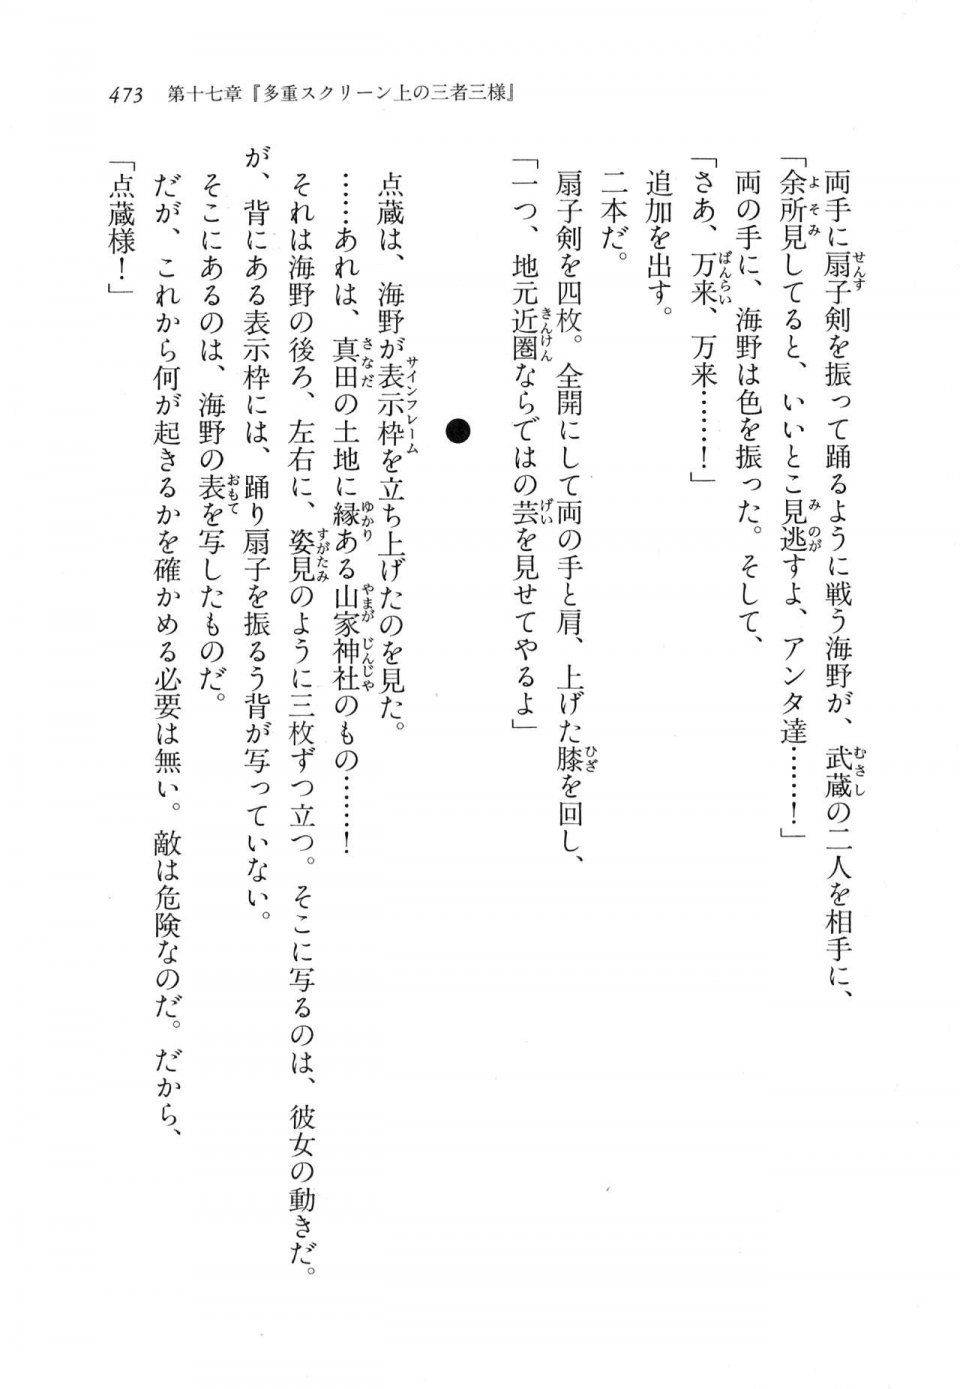 Kyoukai Senjou no Horizon LN Vol 11(5A) - Photo #473